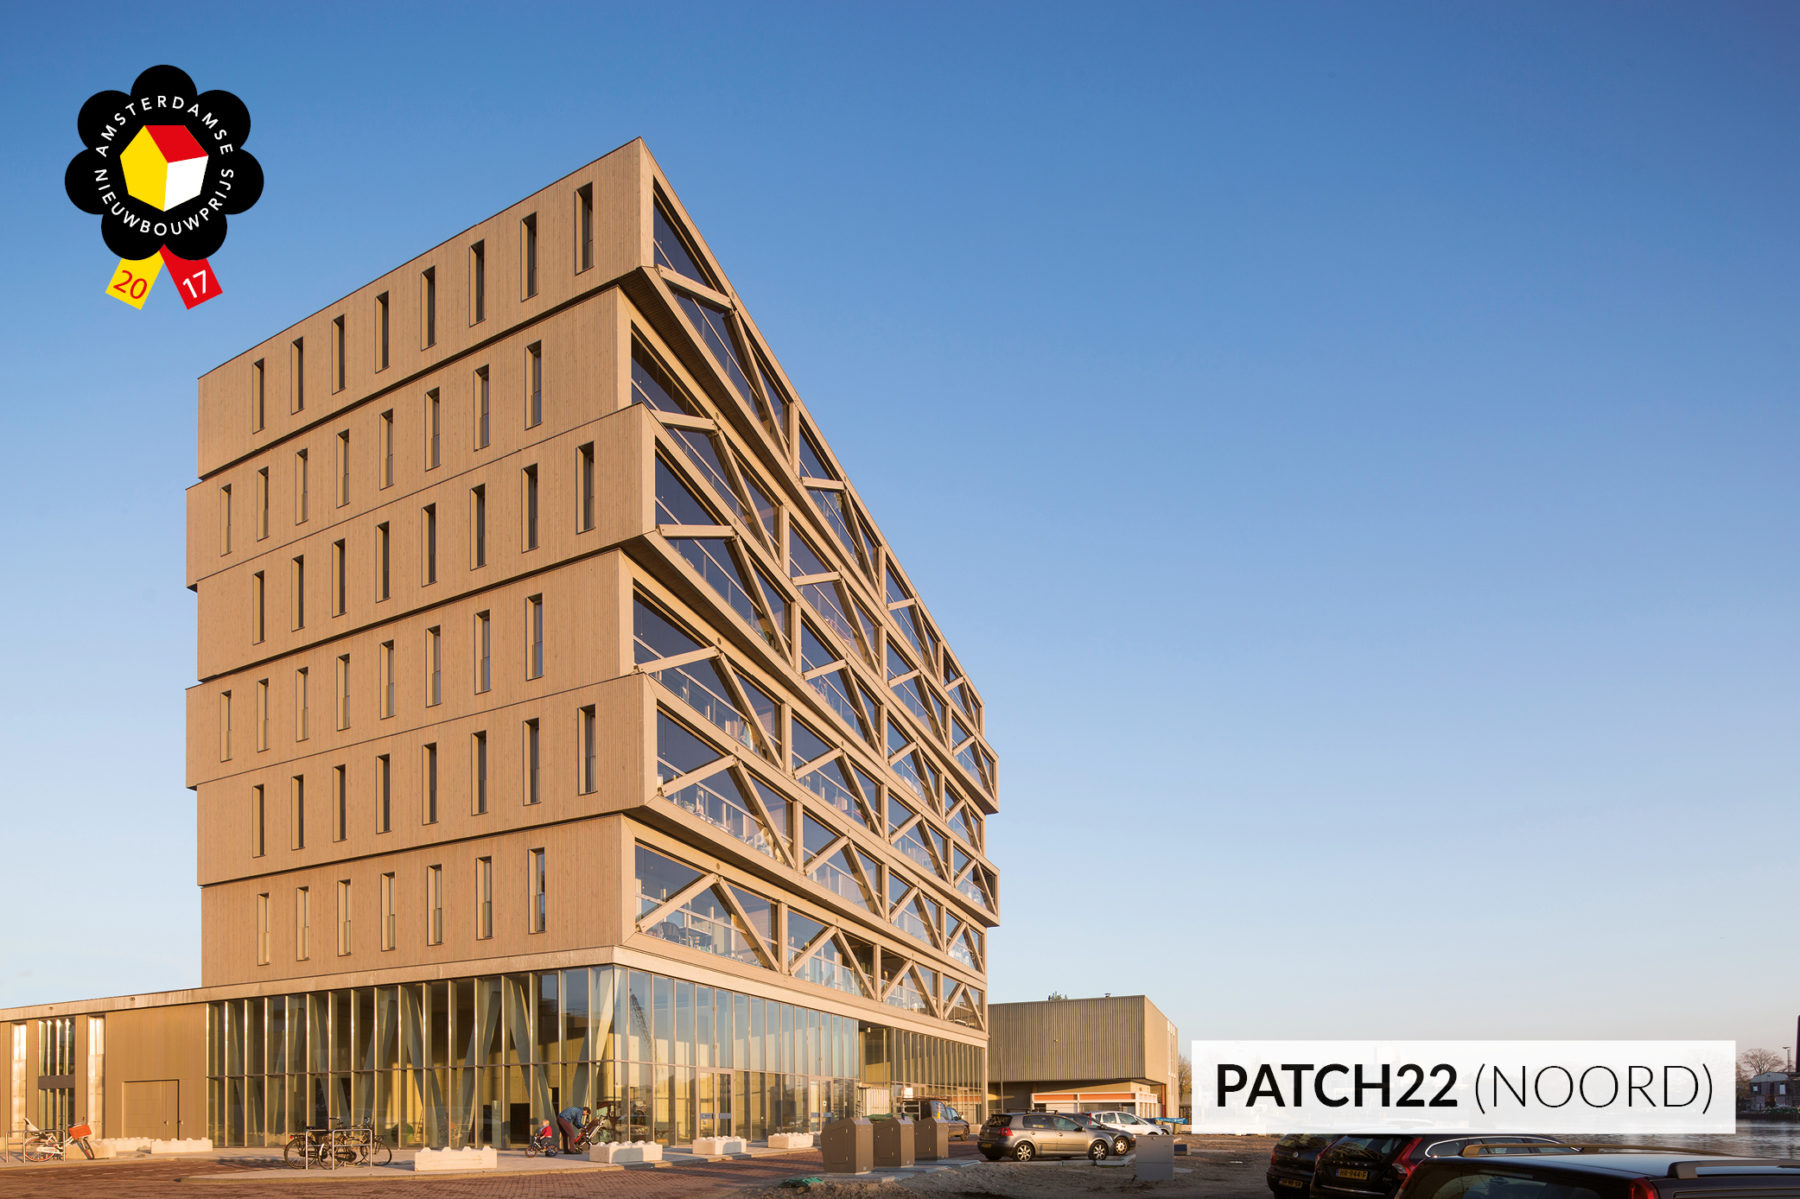 Het door Hillen & Roosen gerealiseerde project Patch22 is genomineerd voor de Amsterdamse Nieuwbouwprijs 2017. Het mooiste en origineelste project van Amsterdam, een project waar wij als Hillen & Roosen trots op zijn. Namens de opdrachtgever, Lemniskade, vragen wij u op dit  bijzondere project te stemmen.